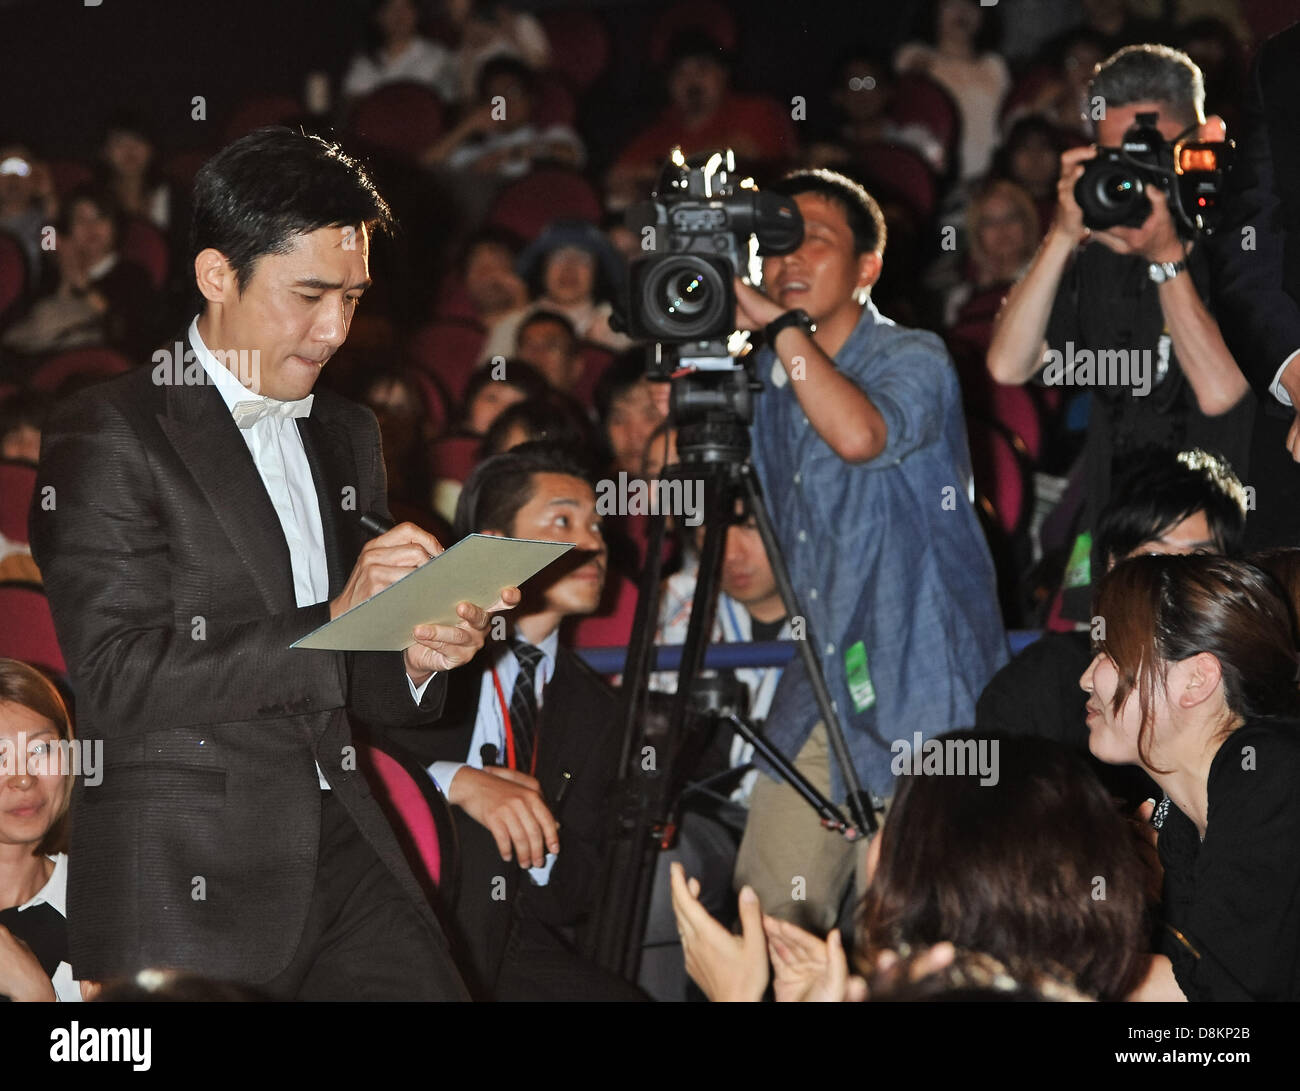 Tony Leung, 30. Mai 2013: Tokio, Japan: Hong Kong Schauspieler Tony Leung besucht der Japan-Premiere für den Film "The Grandmaster" in Tokio, Japan, am 30. Mai 2013. (Foto: AFLO) Stockfoto